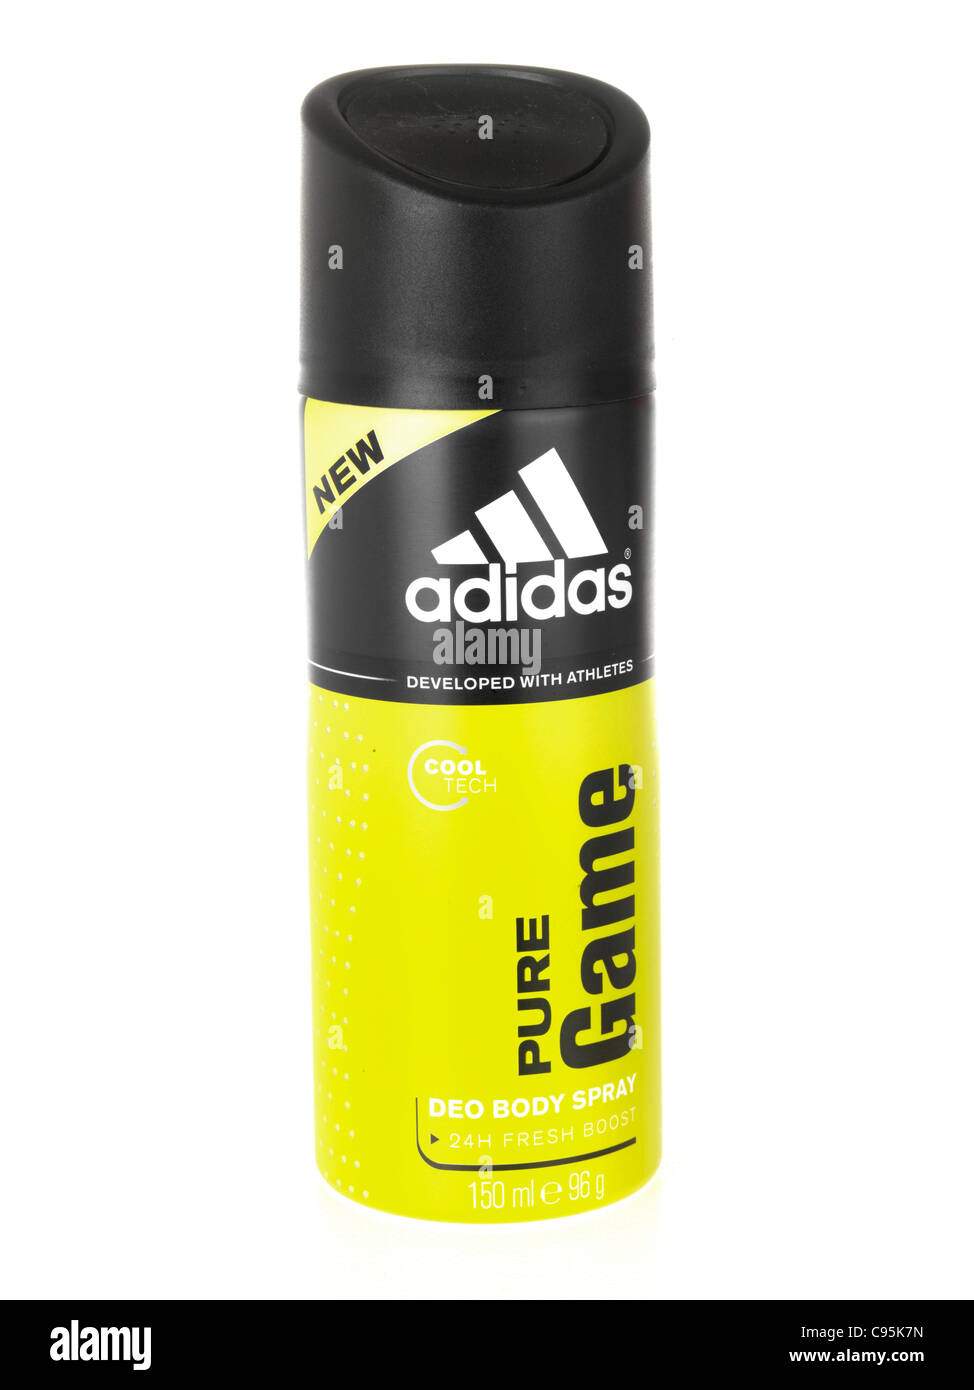 Adidas deodorant body spray stock and - Alamy